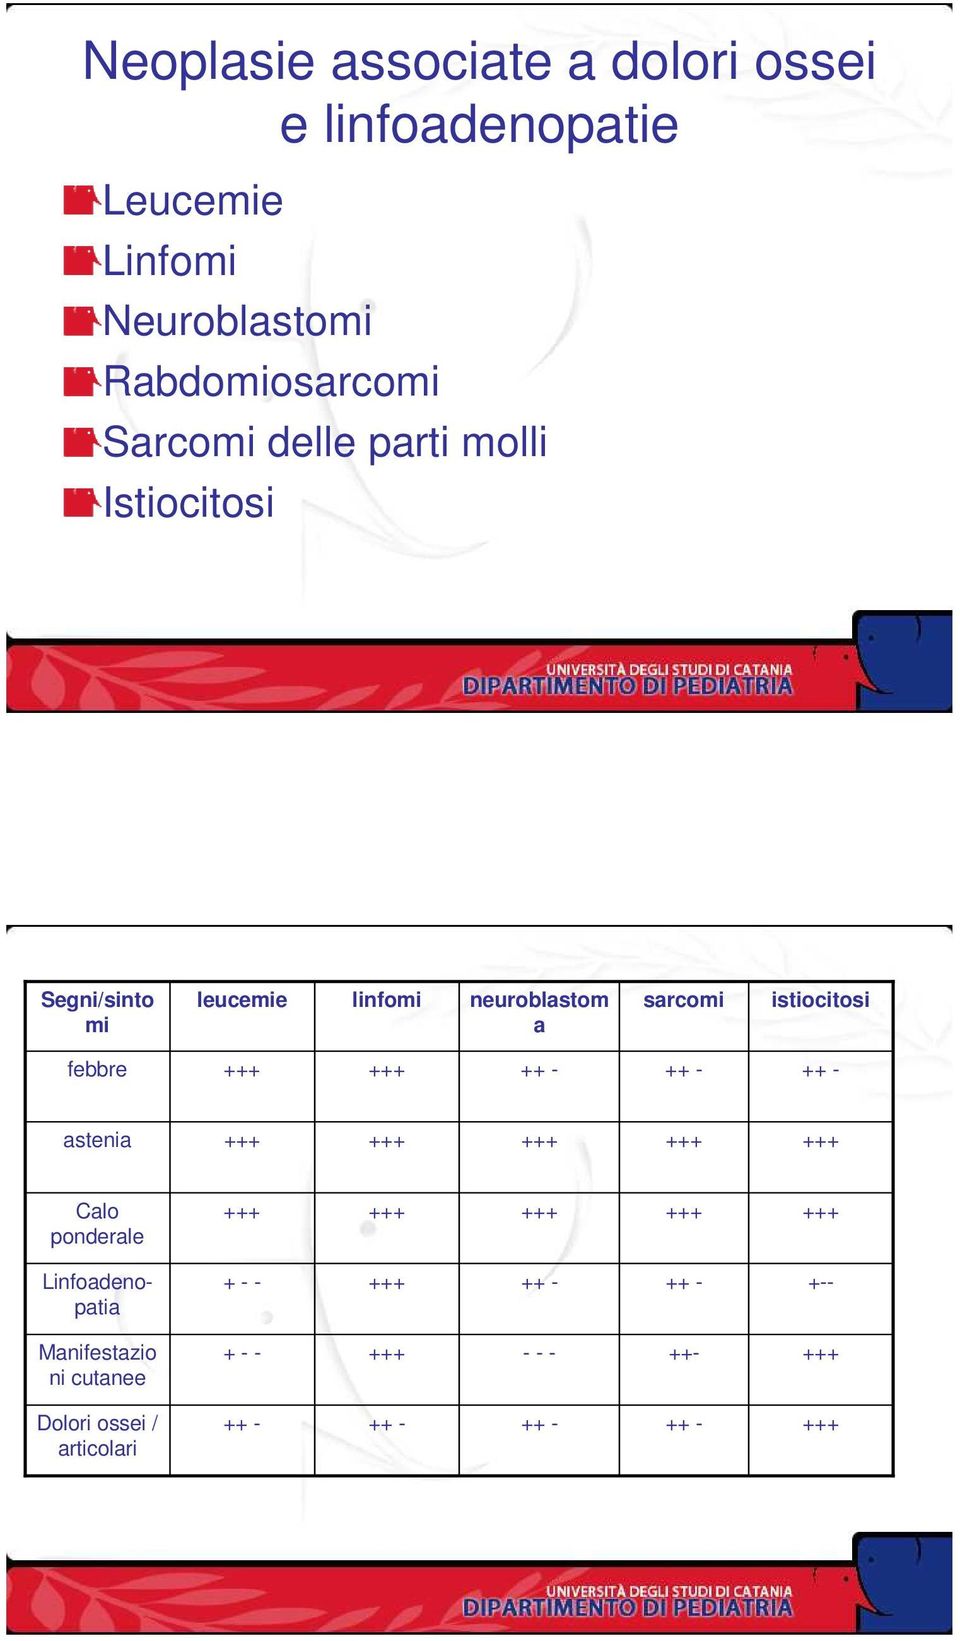 neuroblastom a sarcomi istiocitosi febbre ++ - ++ - ++ - astenia Calo ponderale